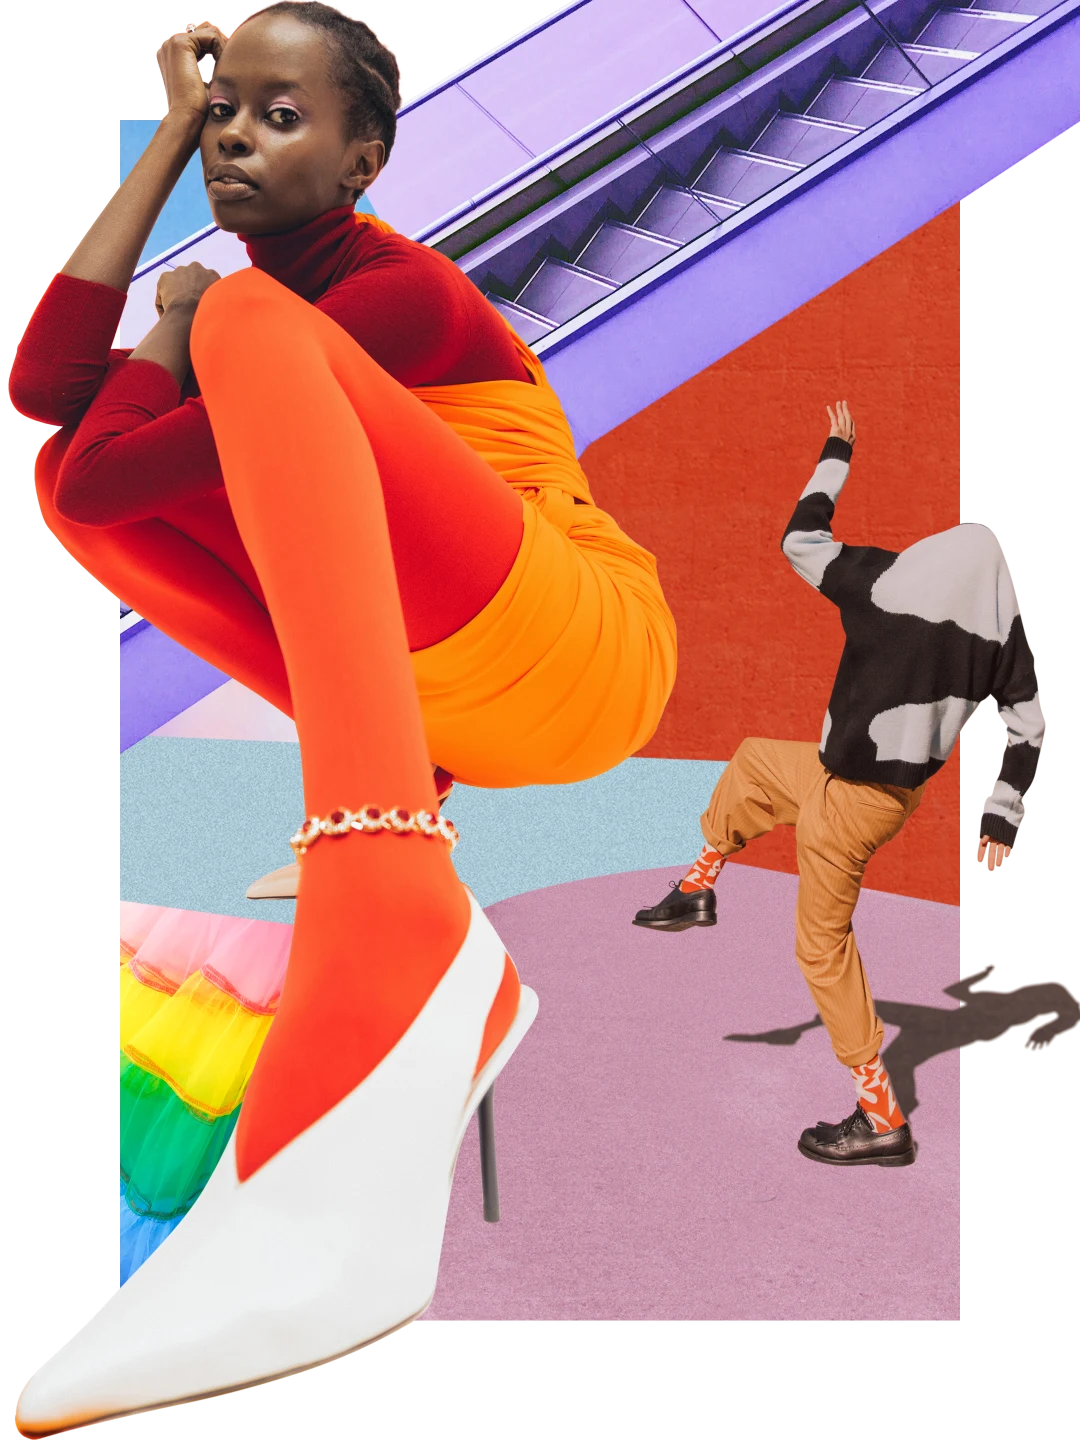 Collage de vêtements et de couleurs vives. À gauche, femme noire en tenue orange vif. À droite, personne portant un pull à motif cachant sa tête, un pantalon et des chaussettes orange. En haut, escalator violet en arrière-plan.
